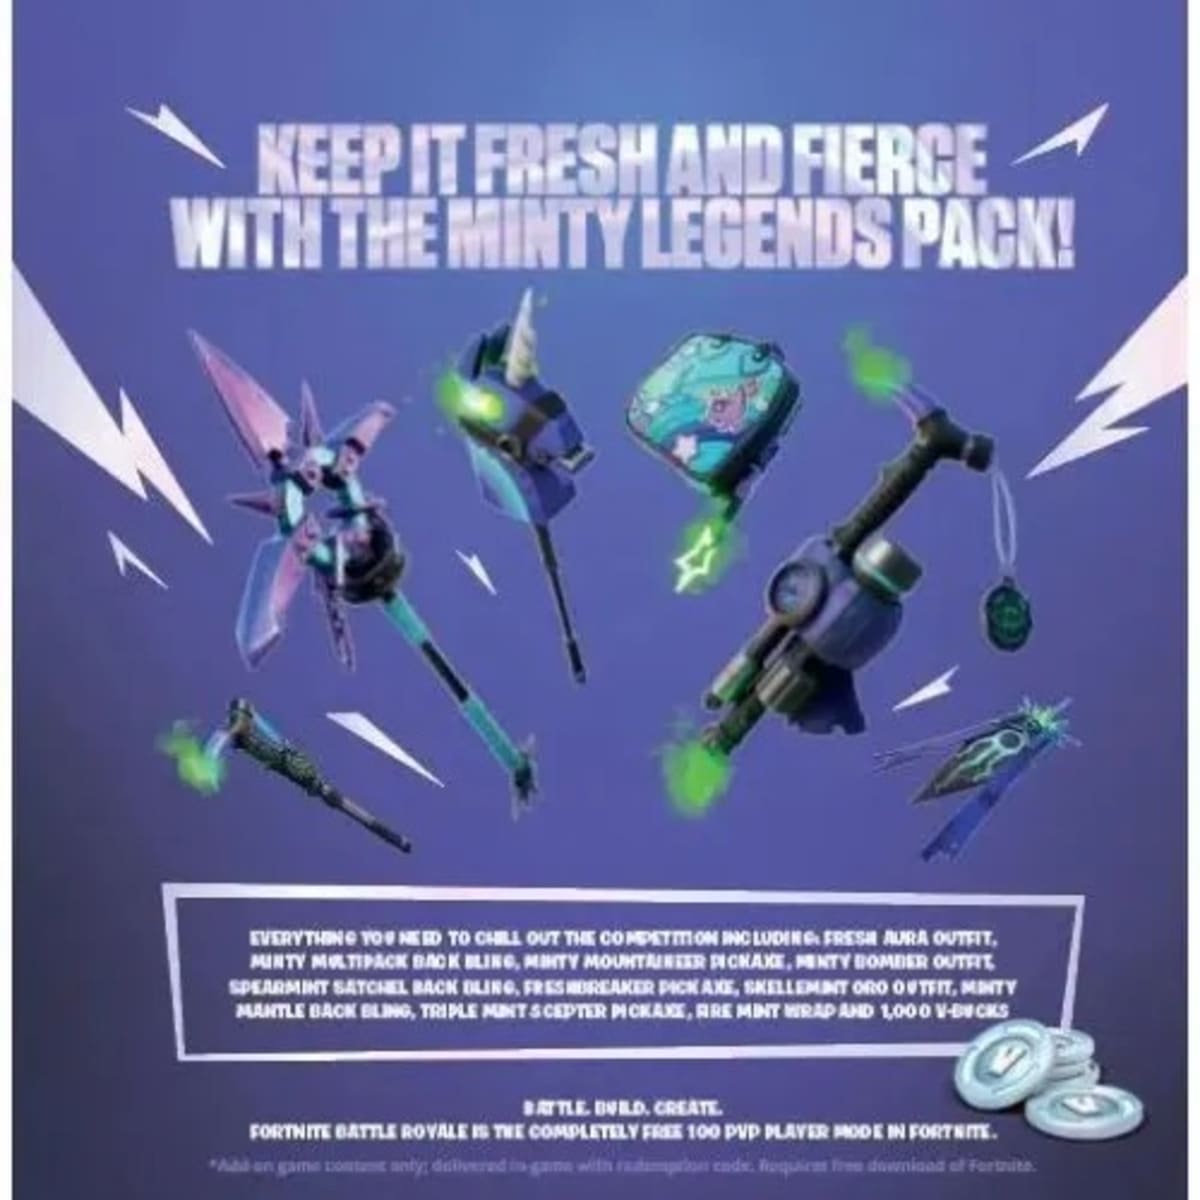 Fortnite: Minty Legends Pack [PlayStation 4] 